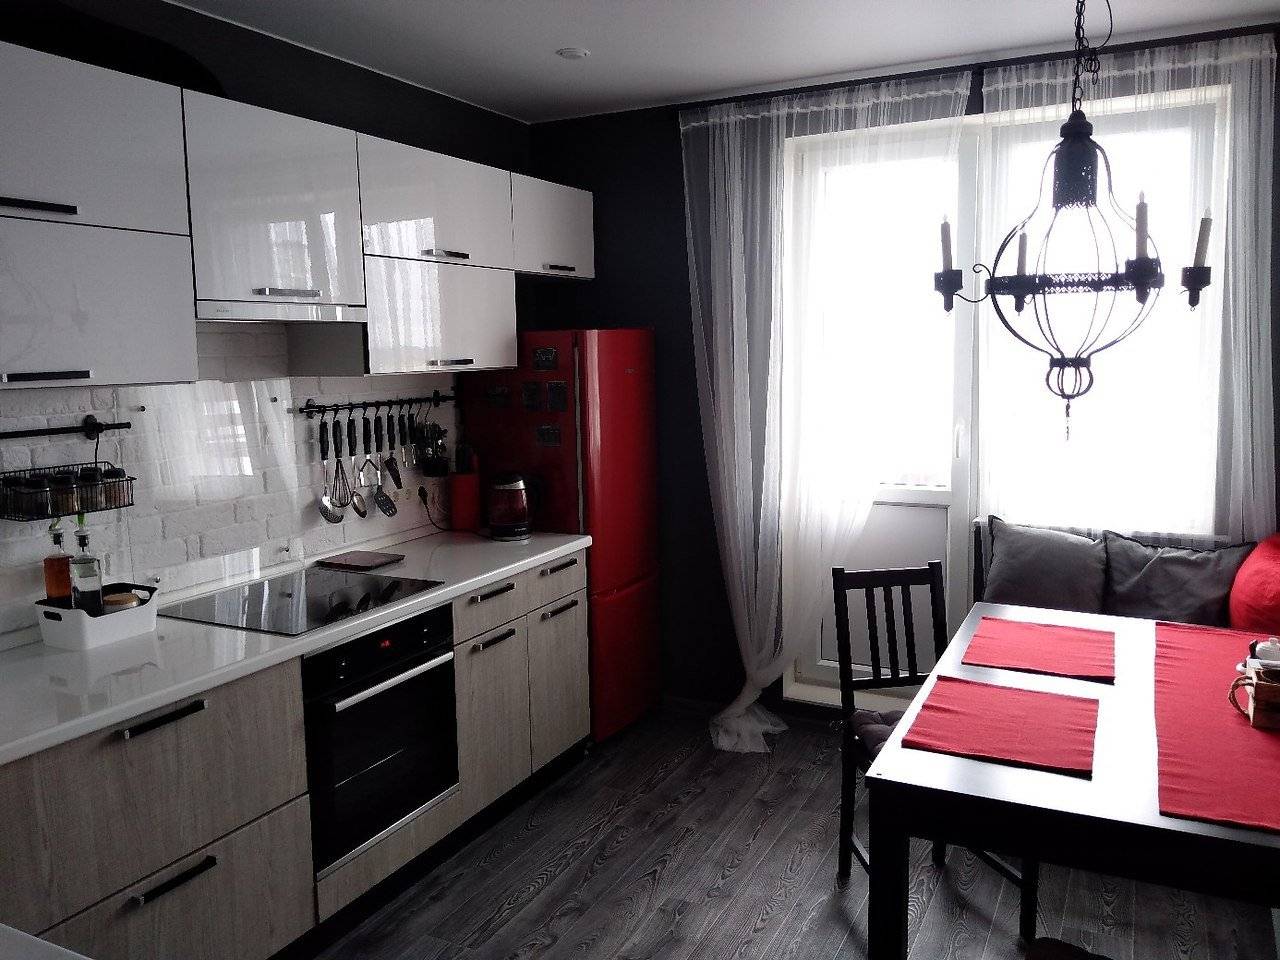 Белая кухня: дизайн и 99 фото кухонных интерьеров в белом цвете